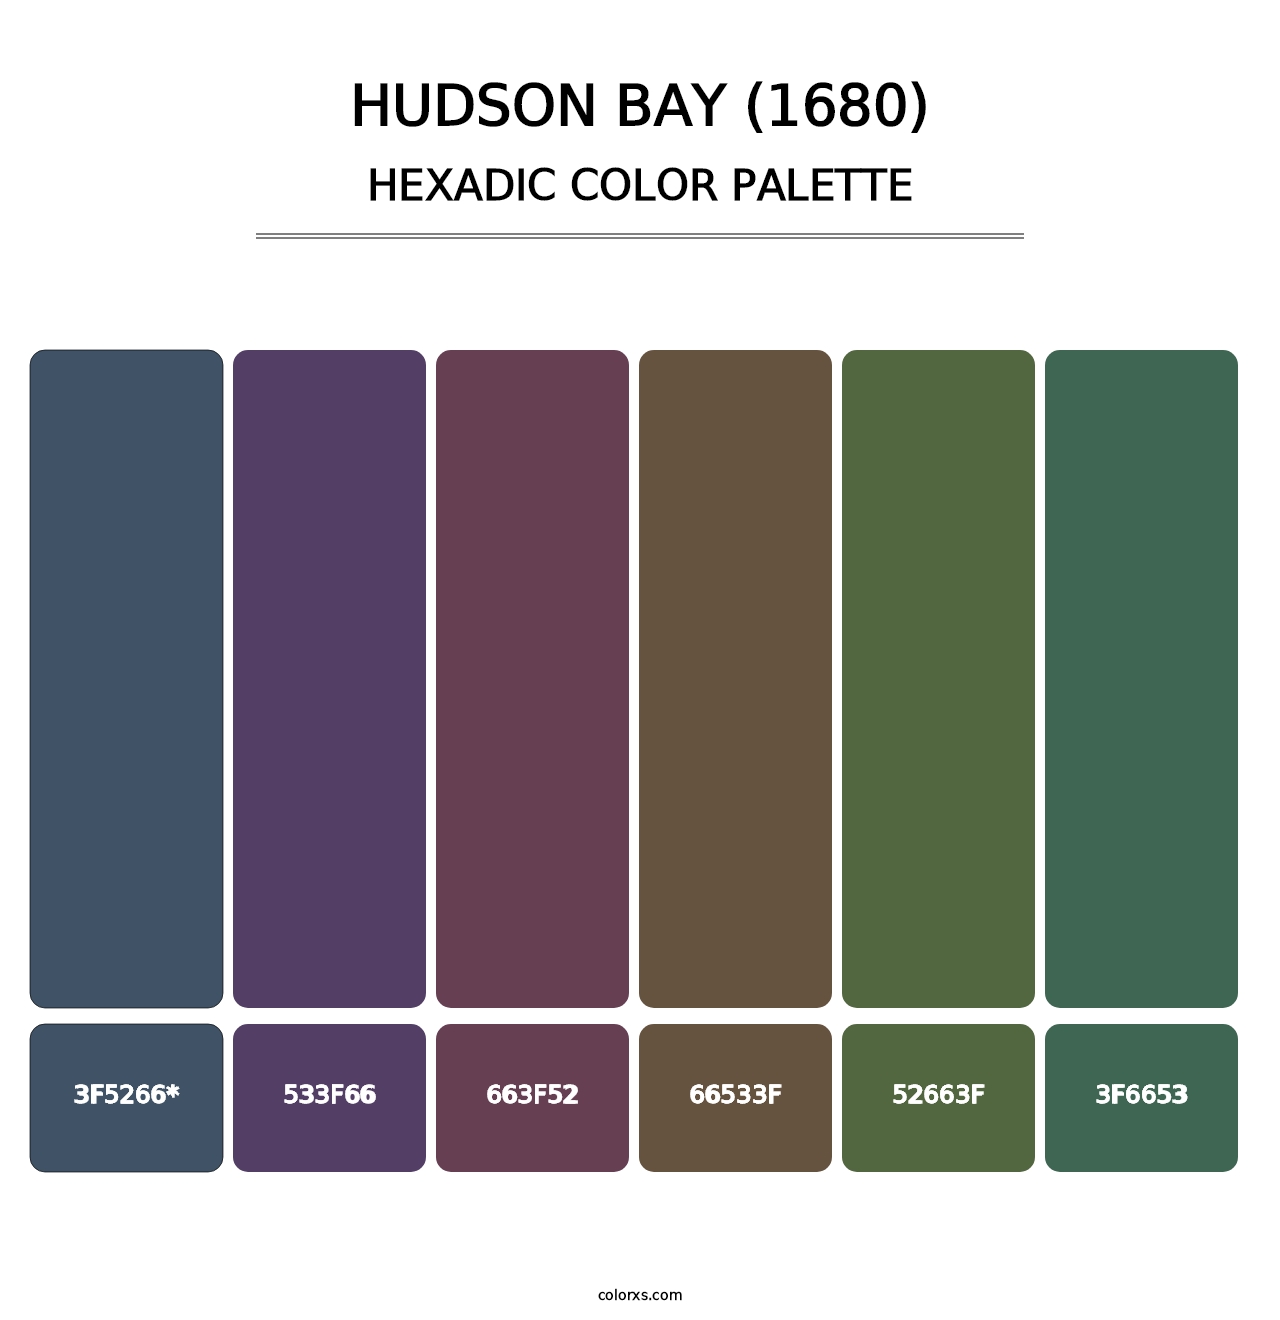 Hudson Bay (1680) - Hexadic Color Palette